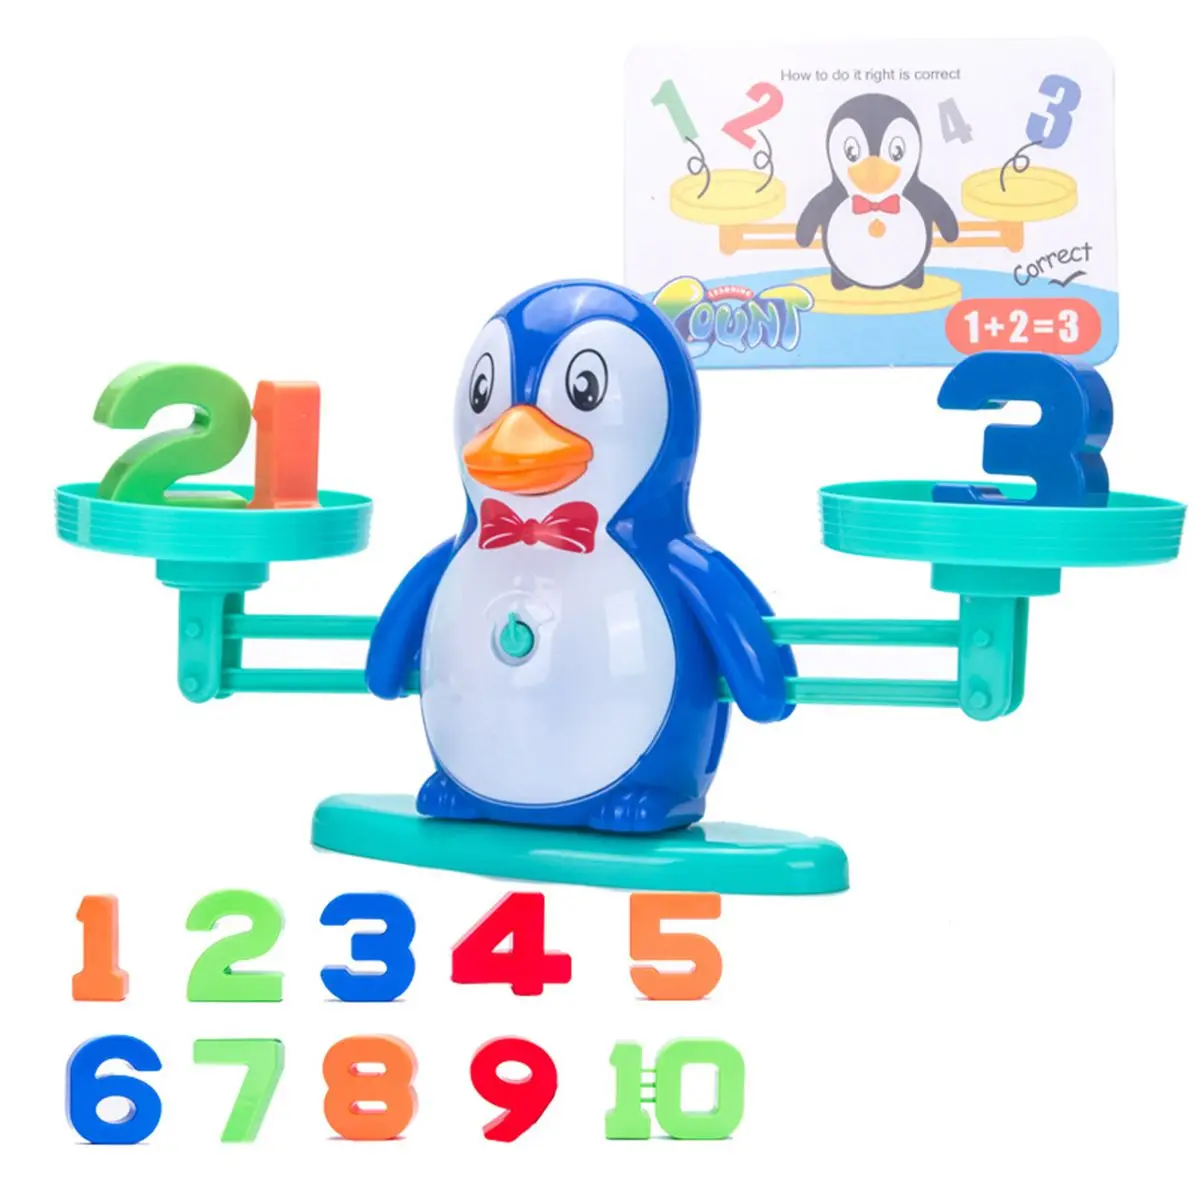 Игра Math Match, настольные игрушки, пингвин, бегемот, балансировочные весы, балансировочная игра, Детский обучающий игрушка, чтобы узнать добавку и вычитание